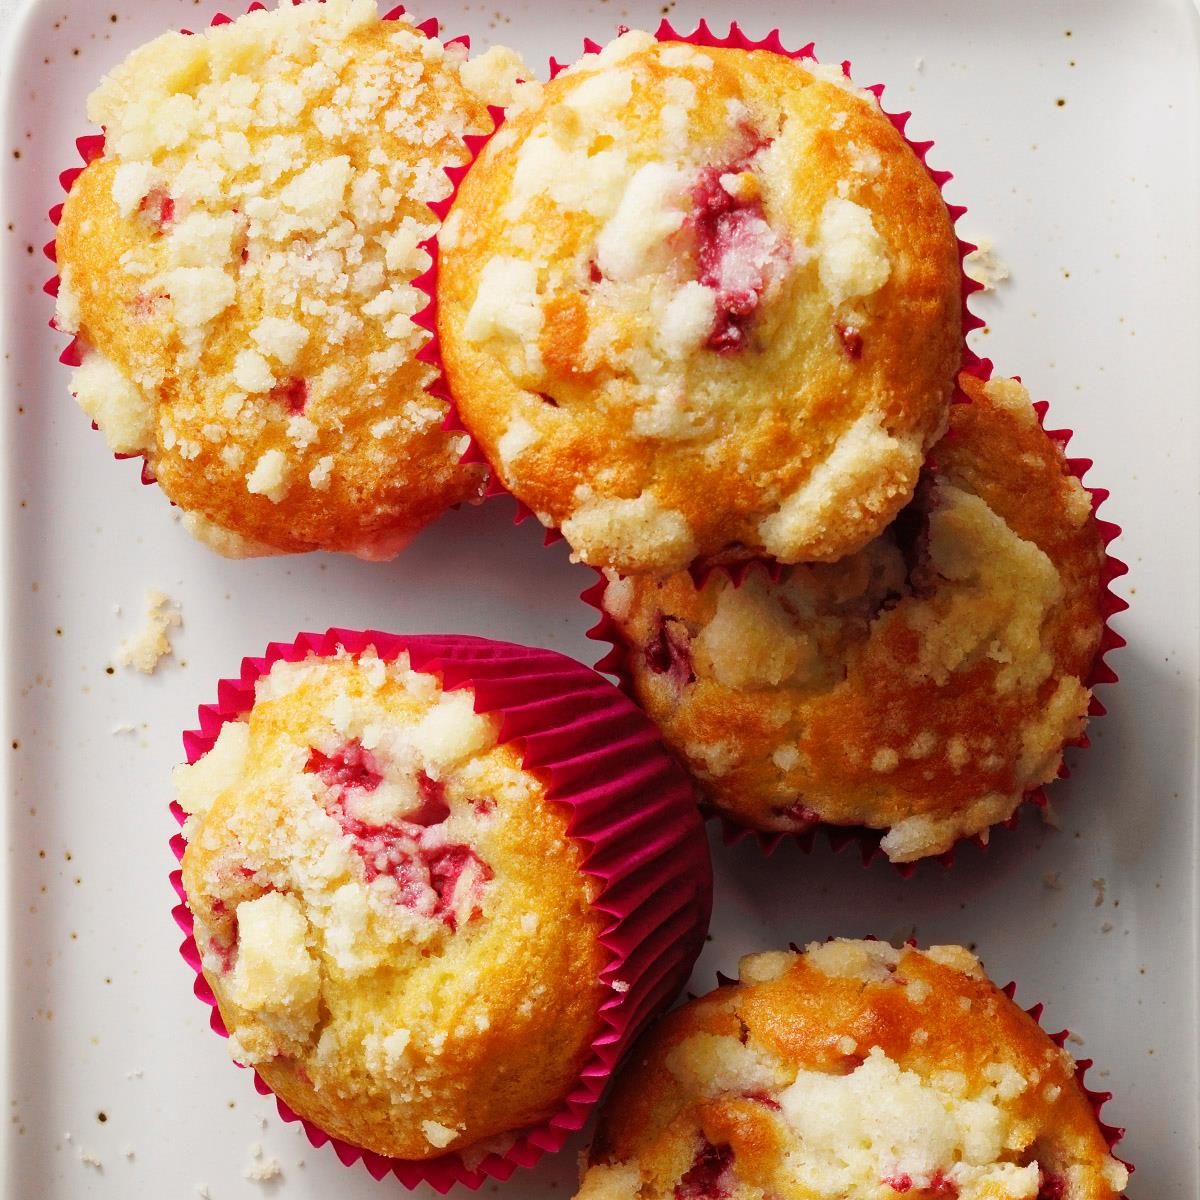 60 Best Muffin Recipes - Easy Muffin Recipe Ideas